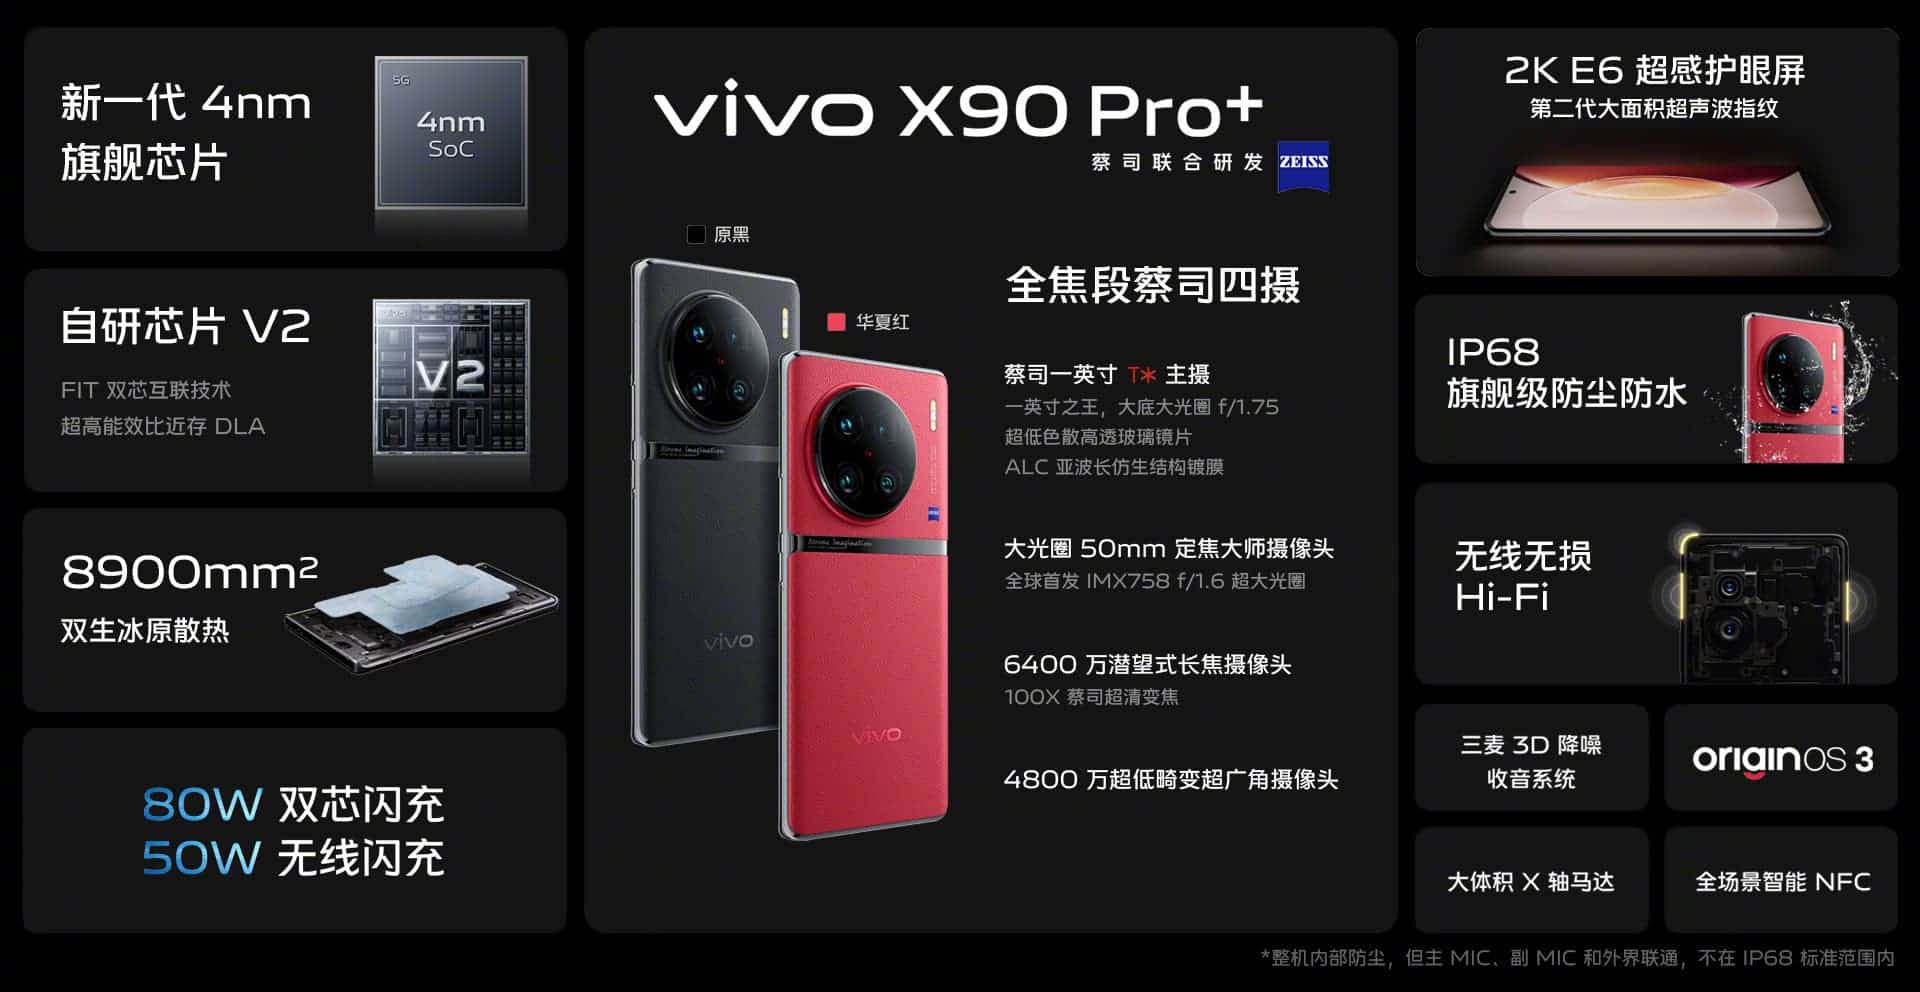 Especificaciones de VIVO X90 Pro+